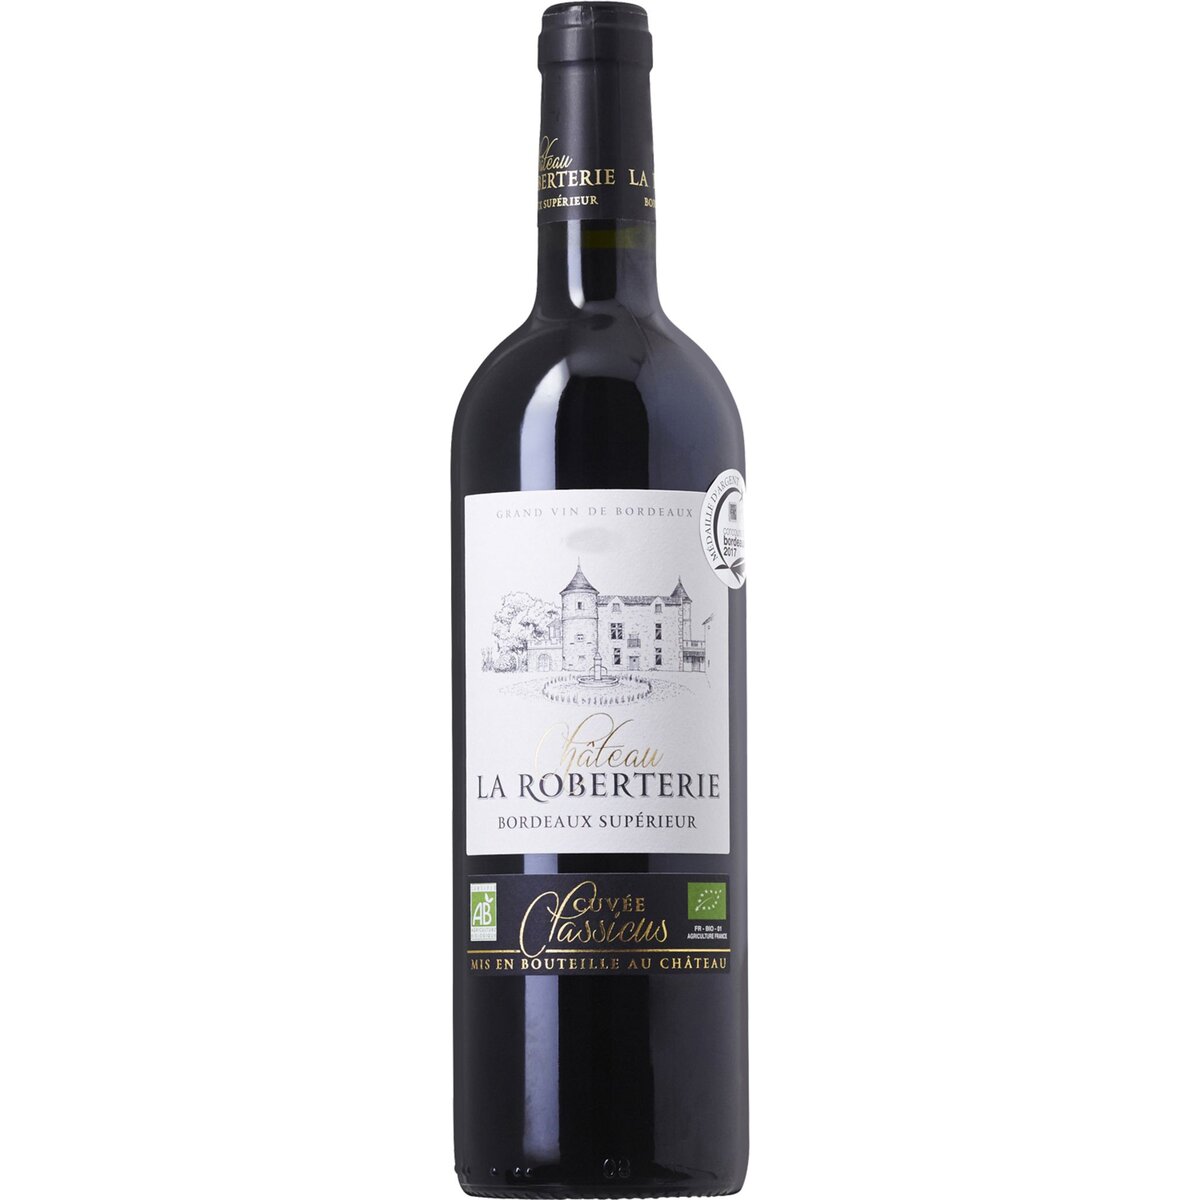 Vin rouge Château La Roberterie Classicus Bordeaux supérieur bio 2015 75cl